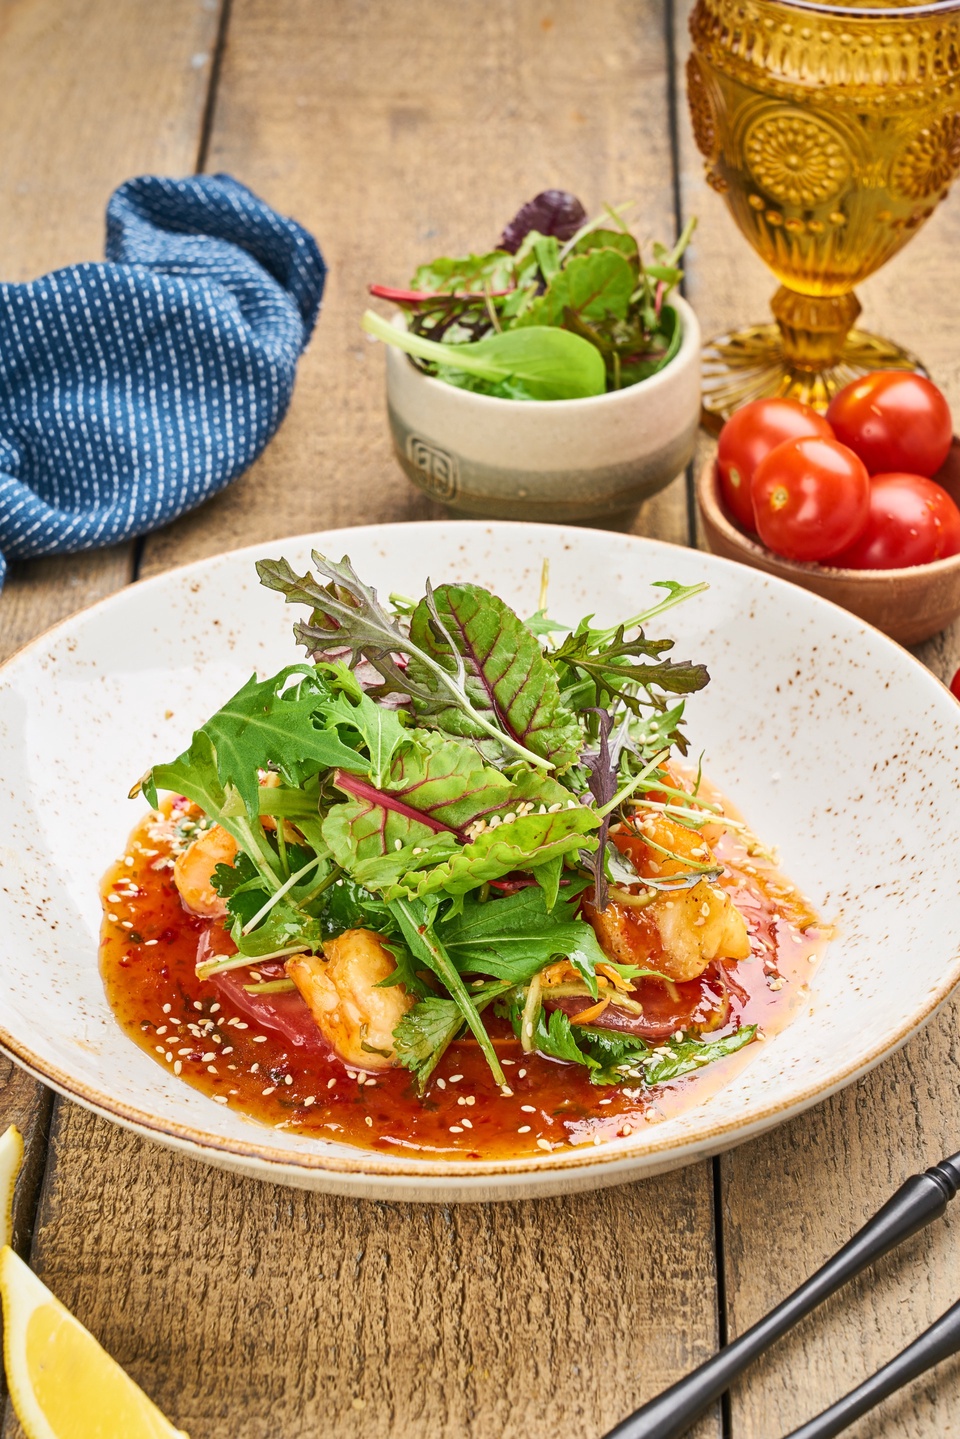 Теплый салат с креветками - 690 ₽, заказать онлайн.